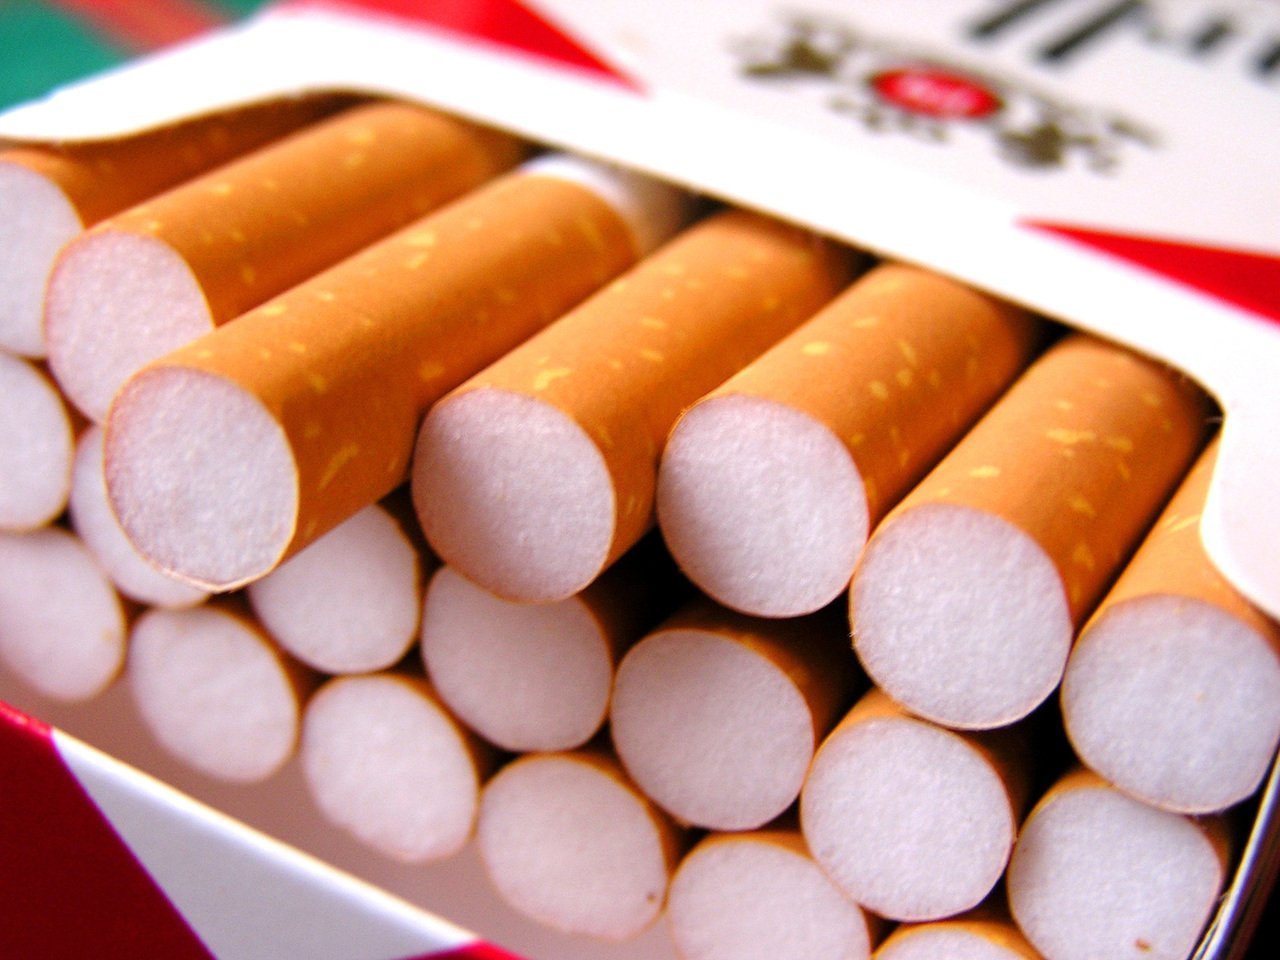 Percheziții de amploare: Grup infracțional organizat specializat în contrabandă cu țigarete și spălare de bani.